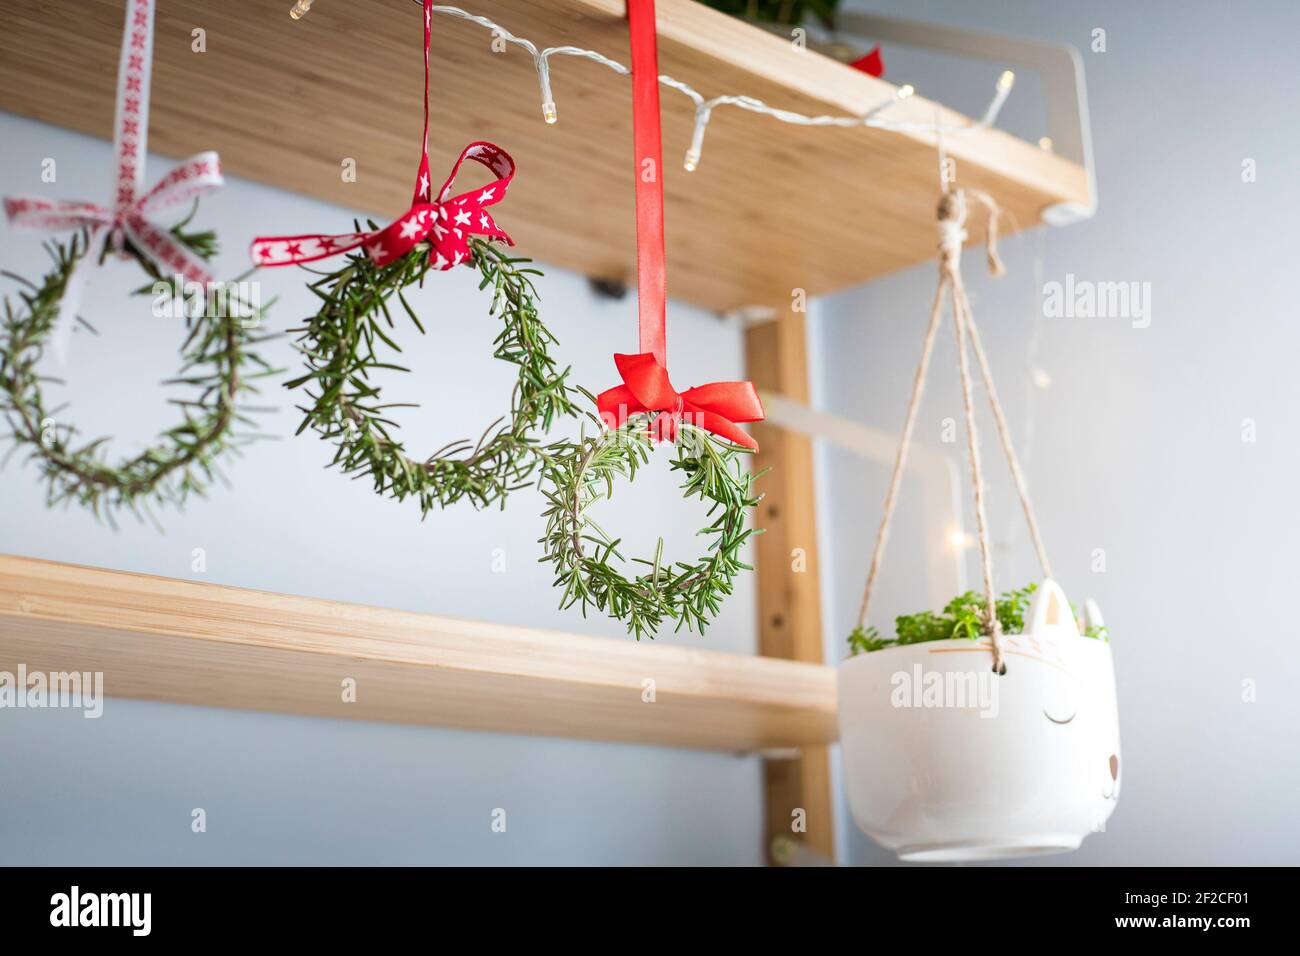 Drei Rosmarinkränze, die mit roten festlichen Bändern geschmückt sind und an einem Regal hängen. Natürliche Wohnkultur, diy, Idee für Weihnachten. Stockfoto